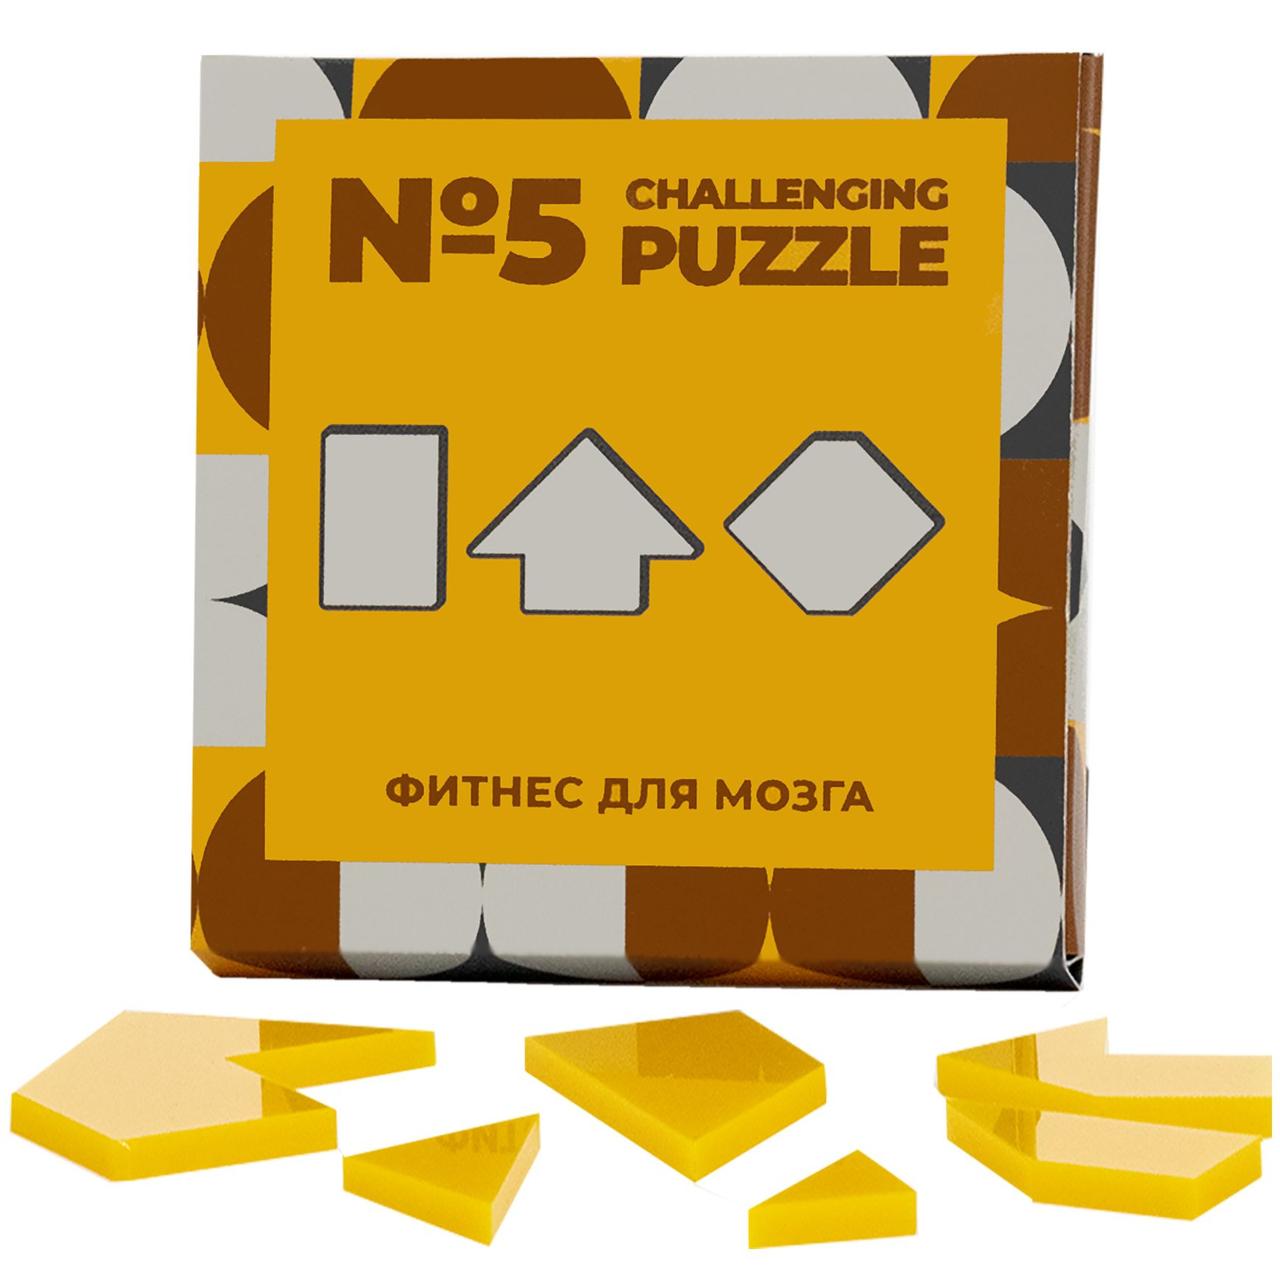 Головоломка Challenging Puzzle Acrylic, модель 5 (артикул 12107.03)